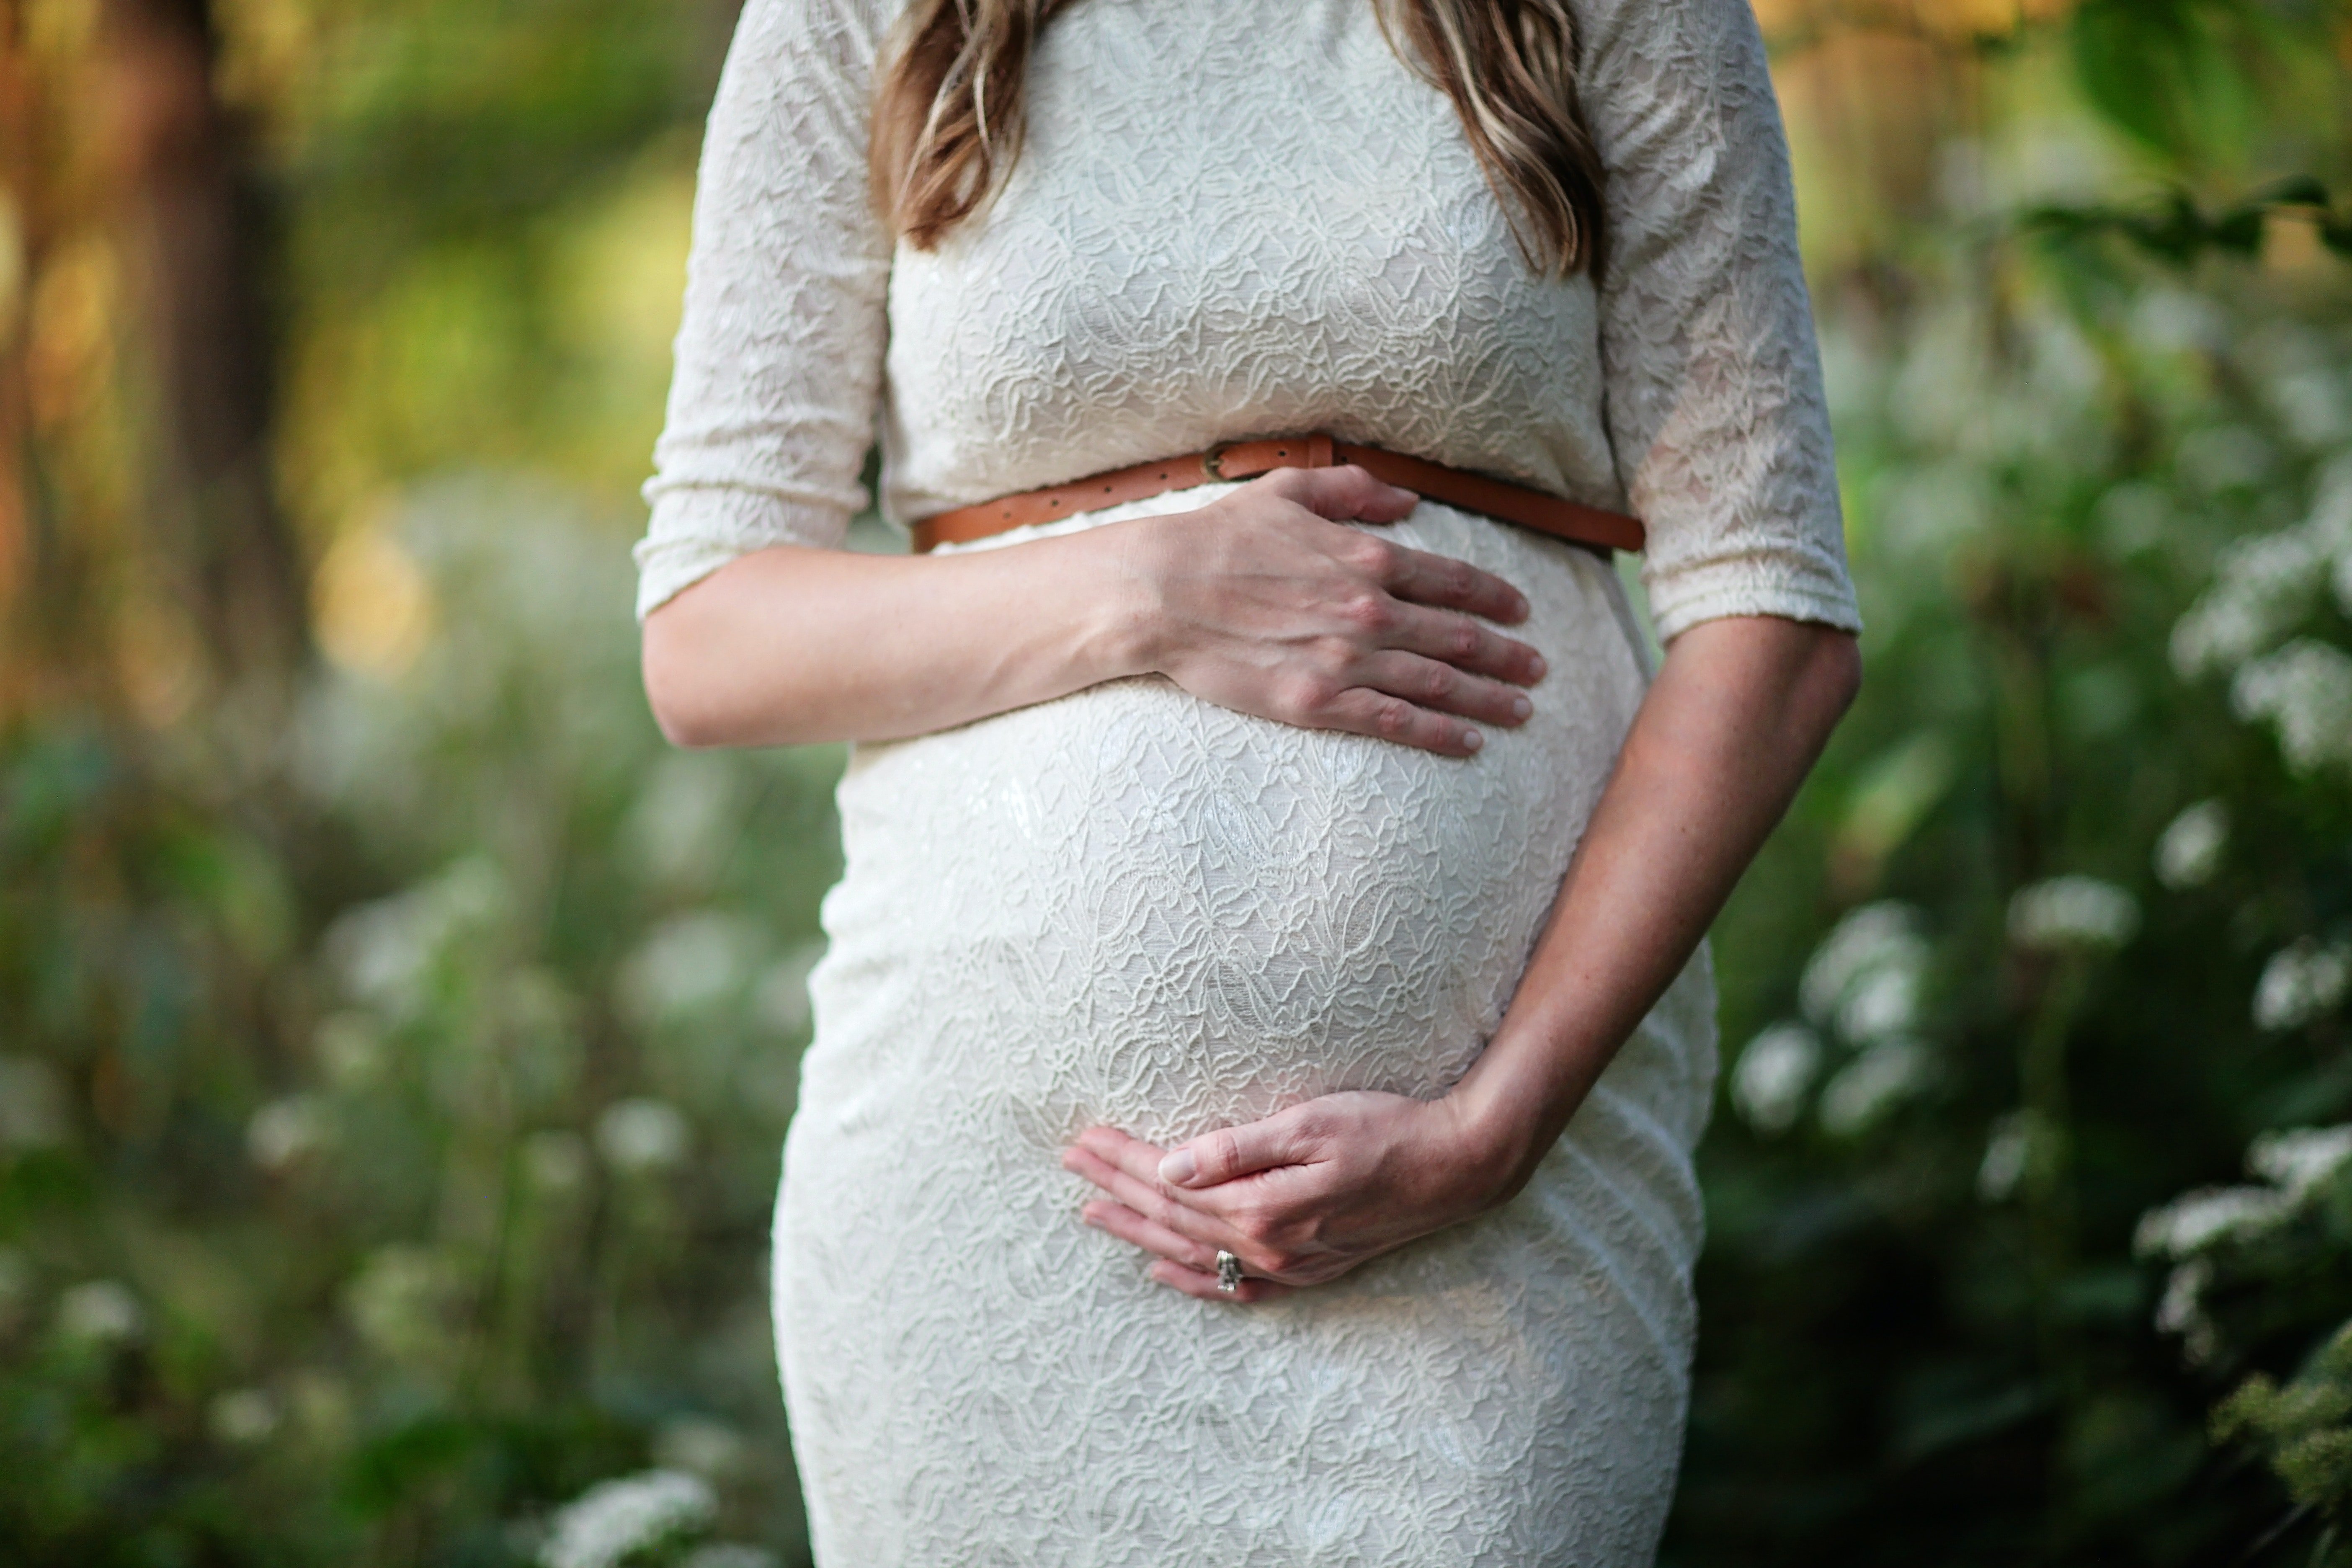 Wendy war im 7. Monat schwanger | Quelle: Pexels